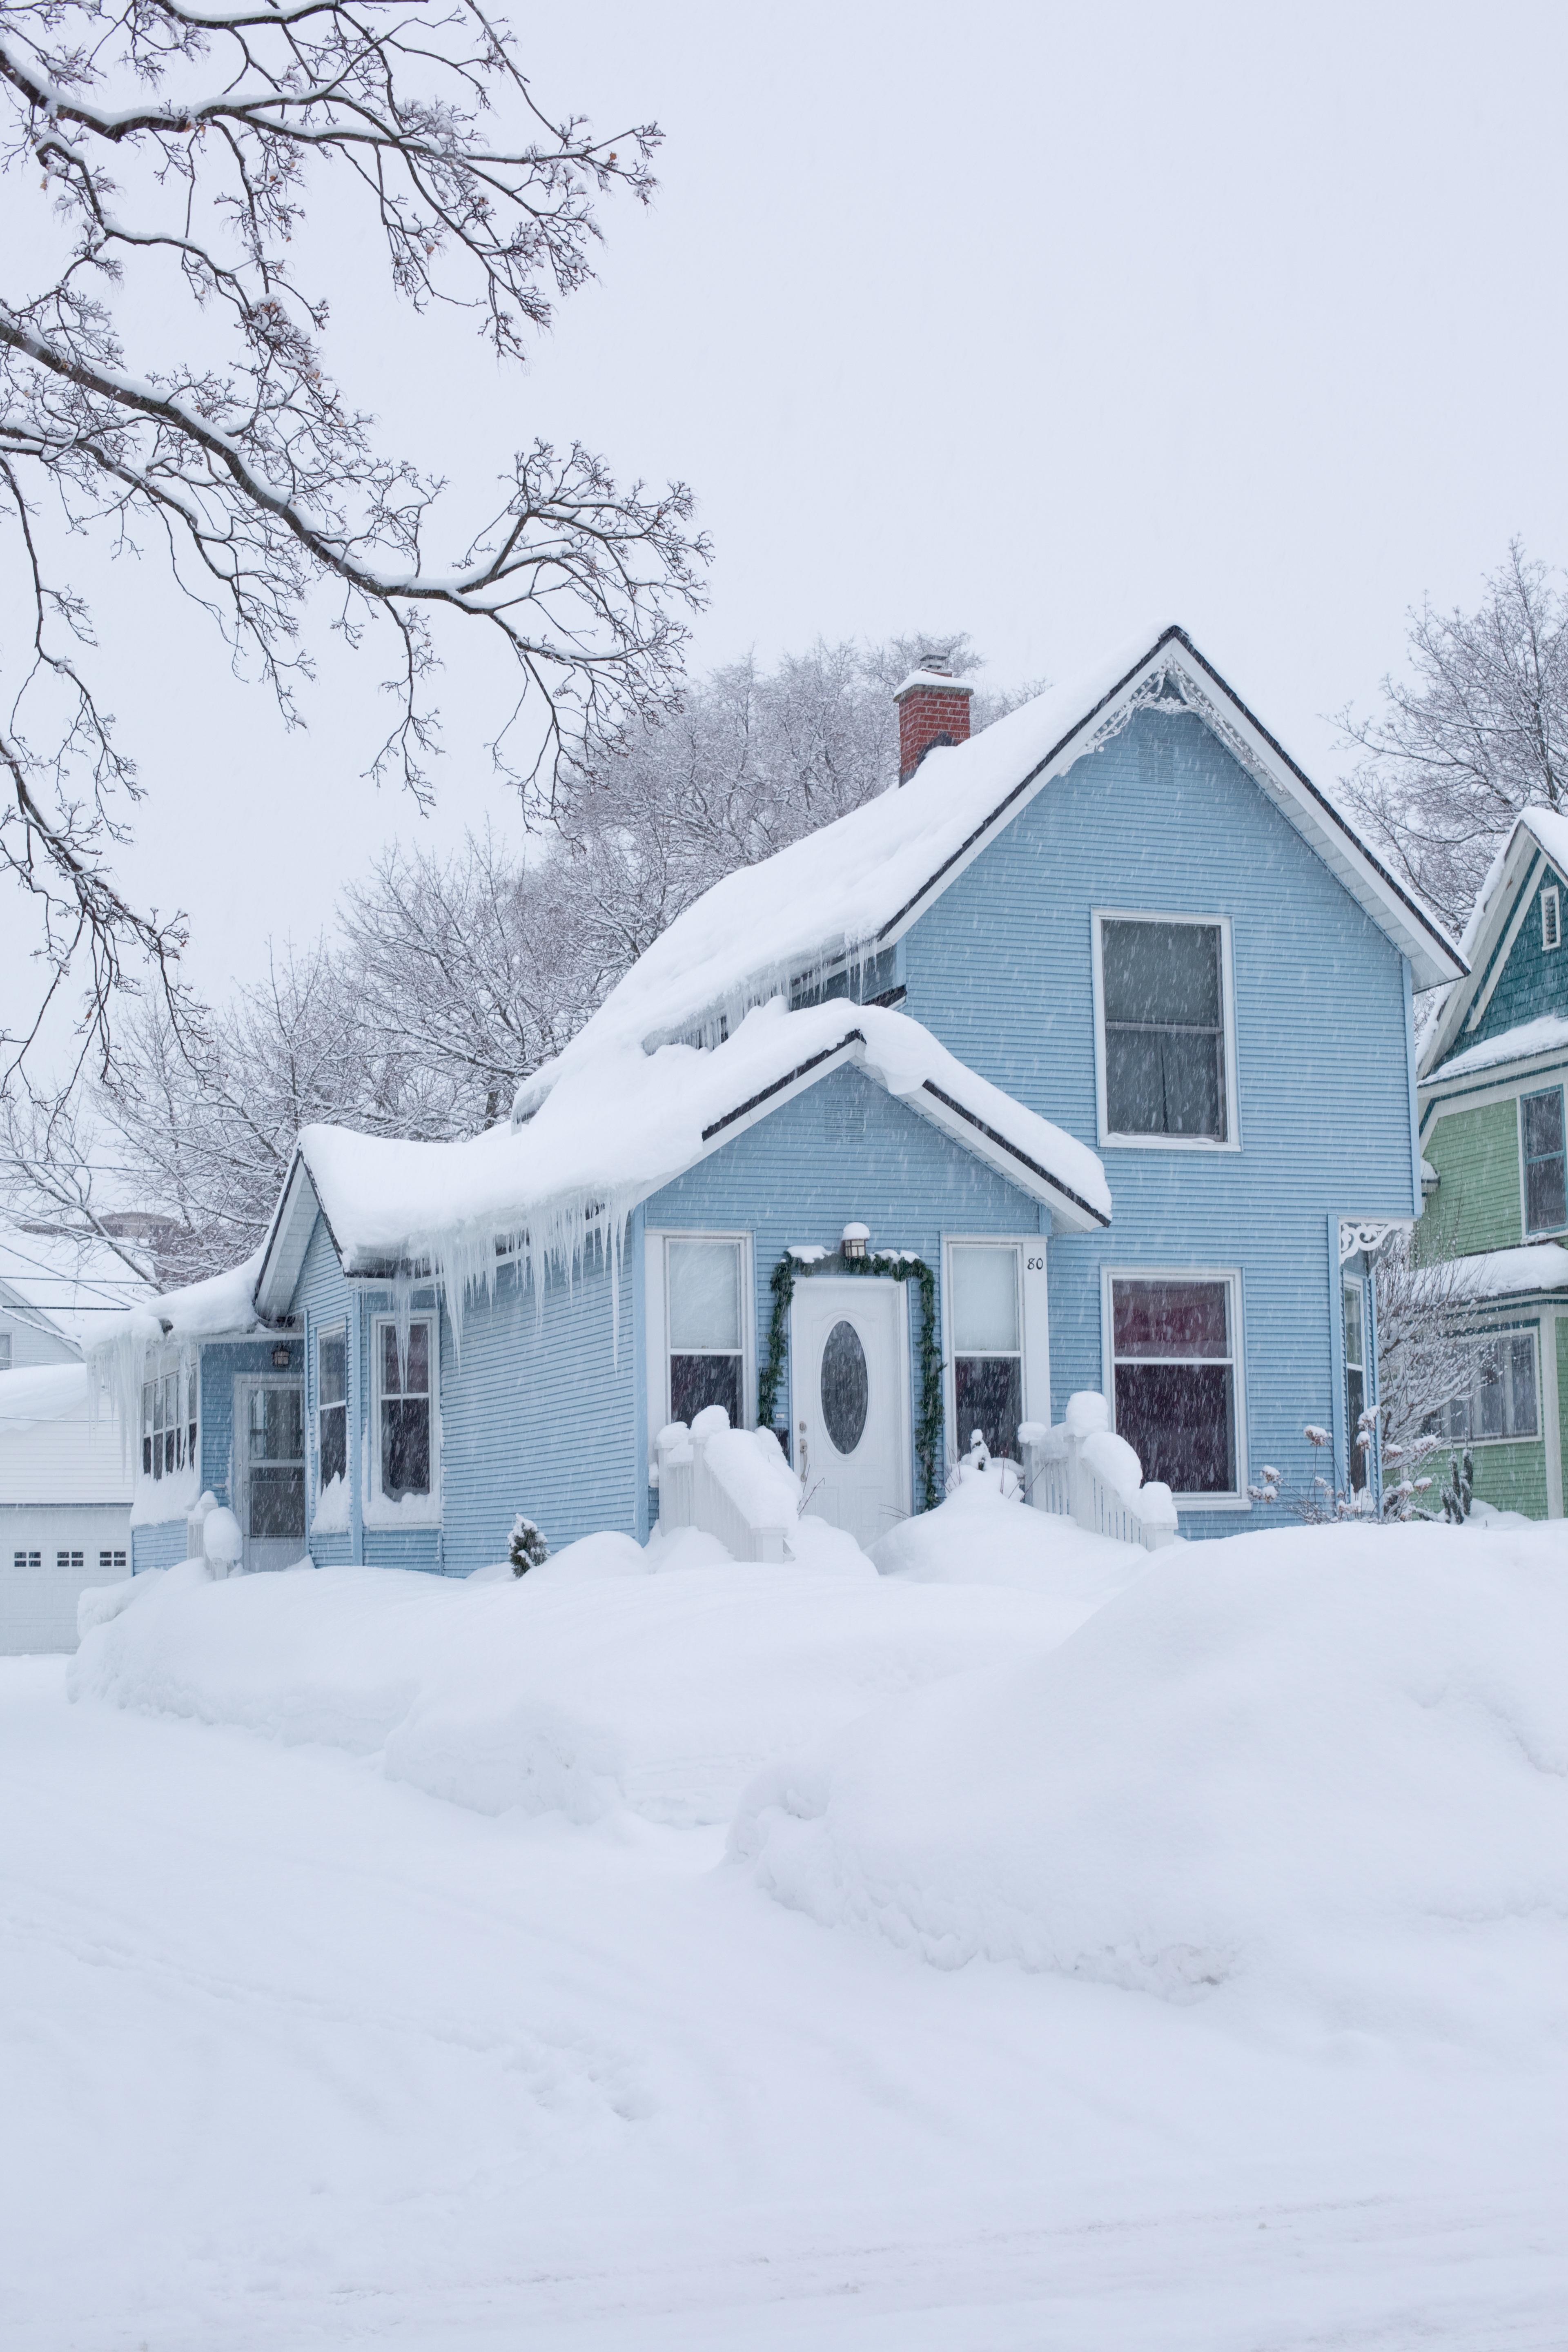 зимний дом в снегу пейзаж обои, анимированная зимняя картинка, животное,  зима фон картинки и Фото для бесплатной загрузки